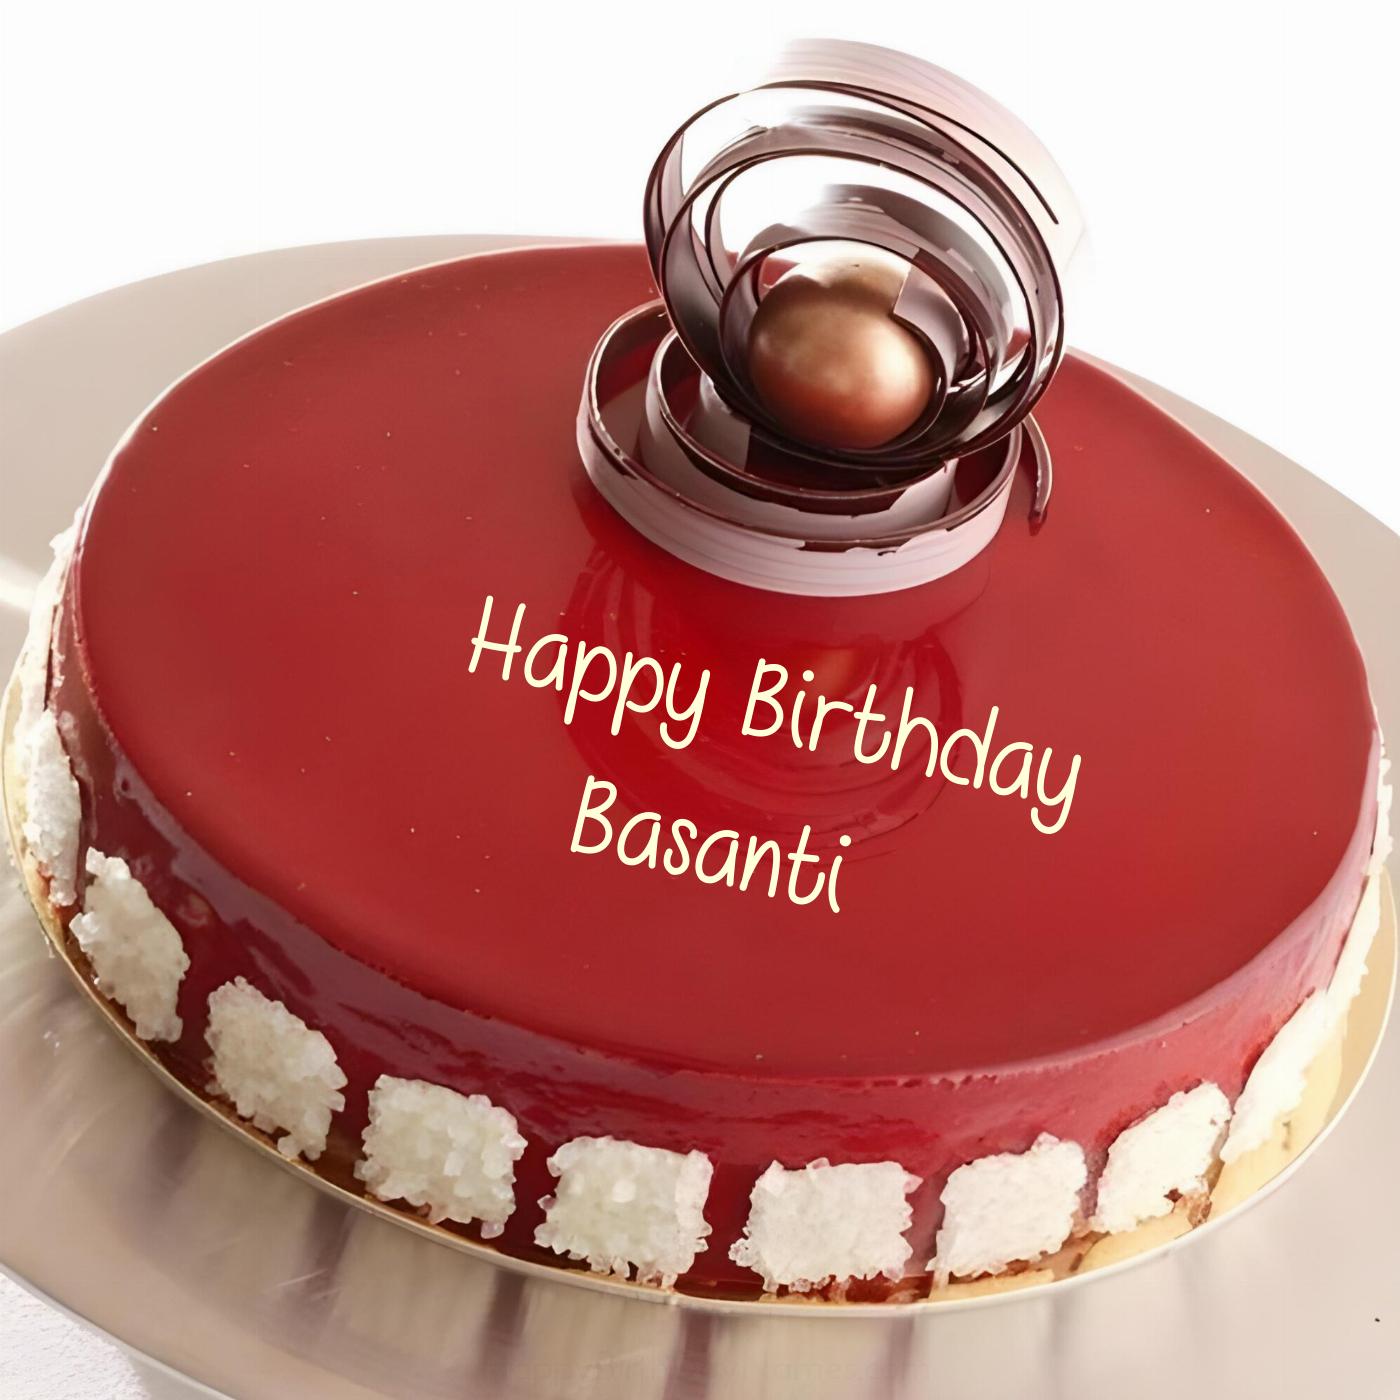 Happy Birthday Basanti Beautiful Red Cake